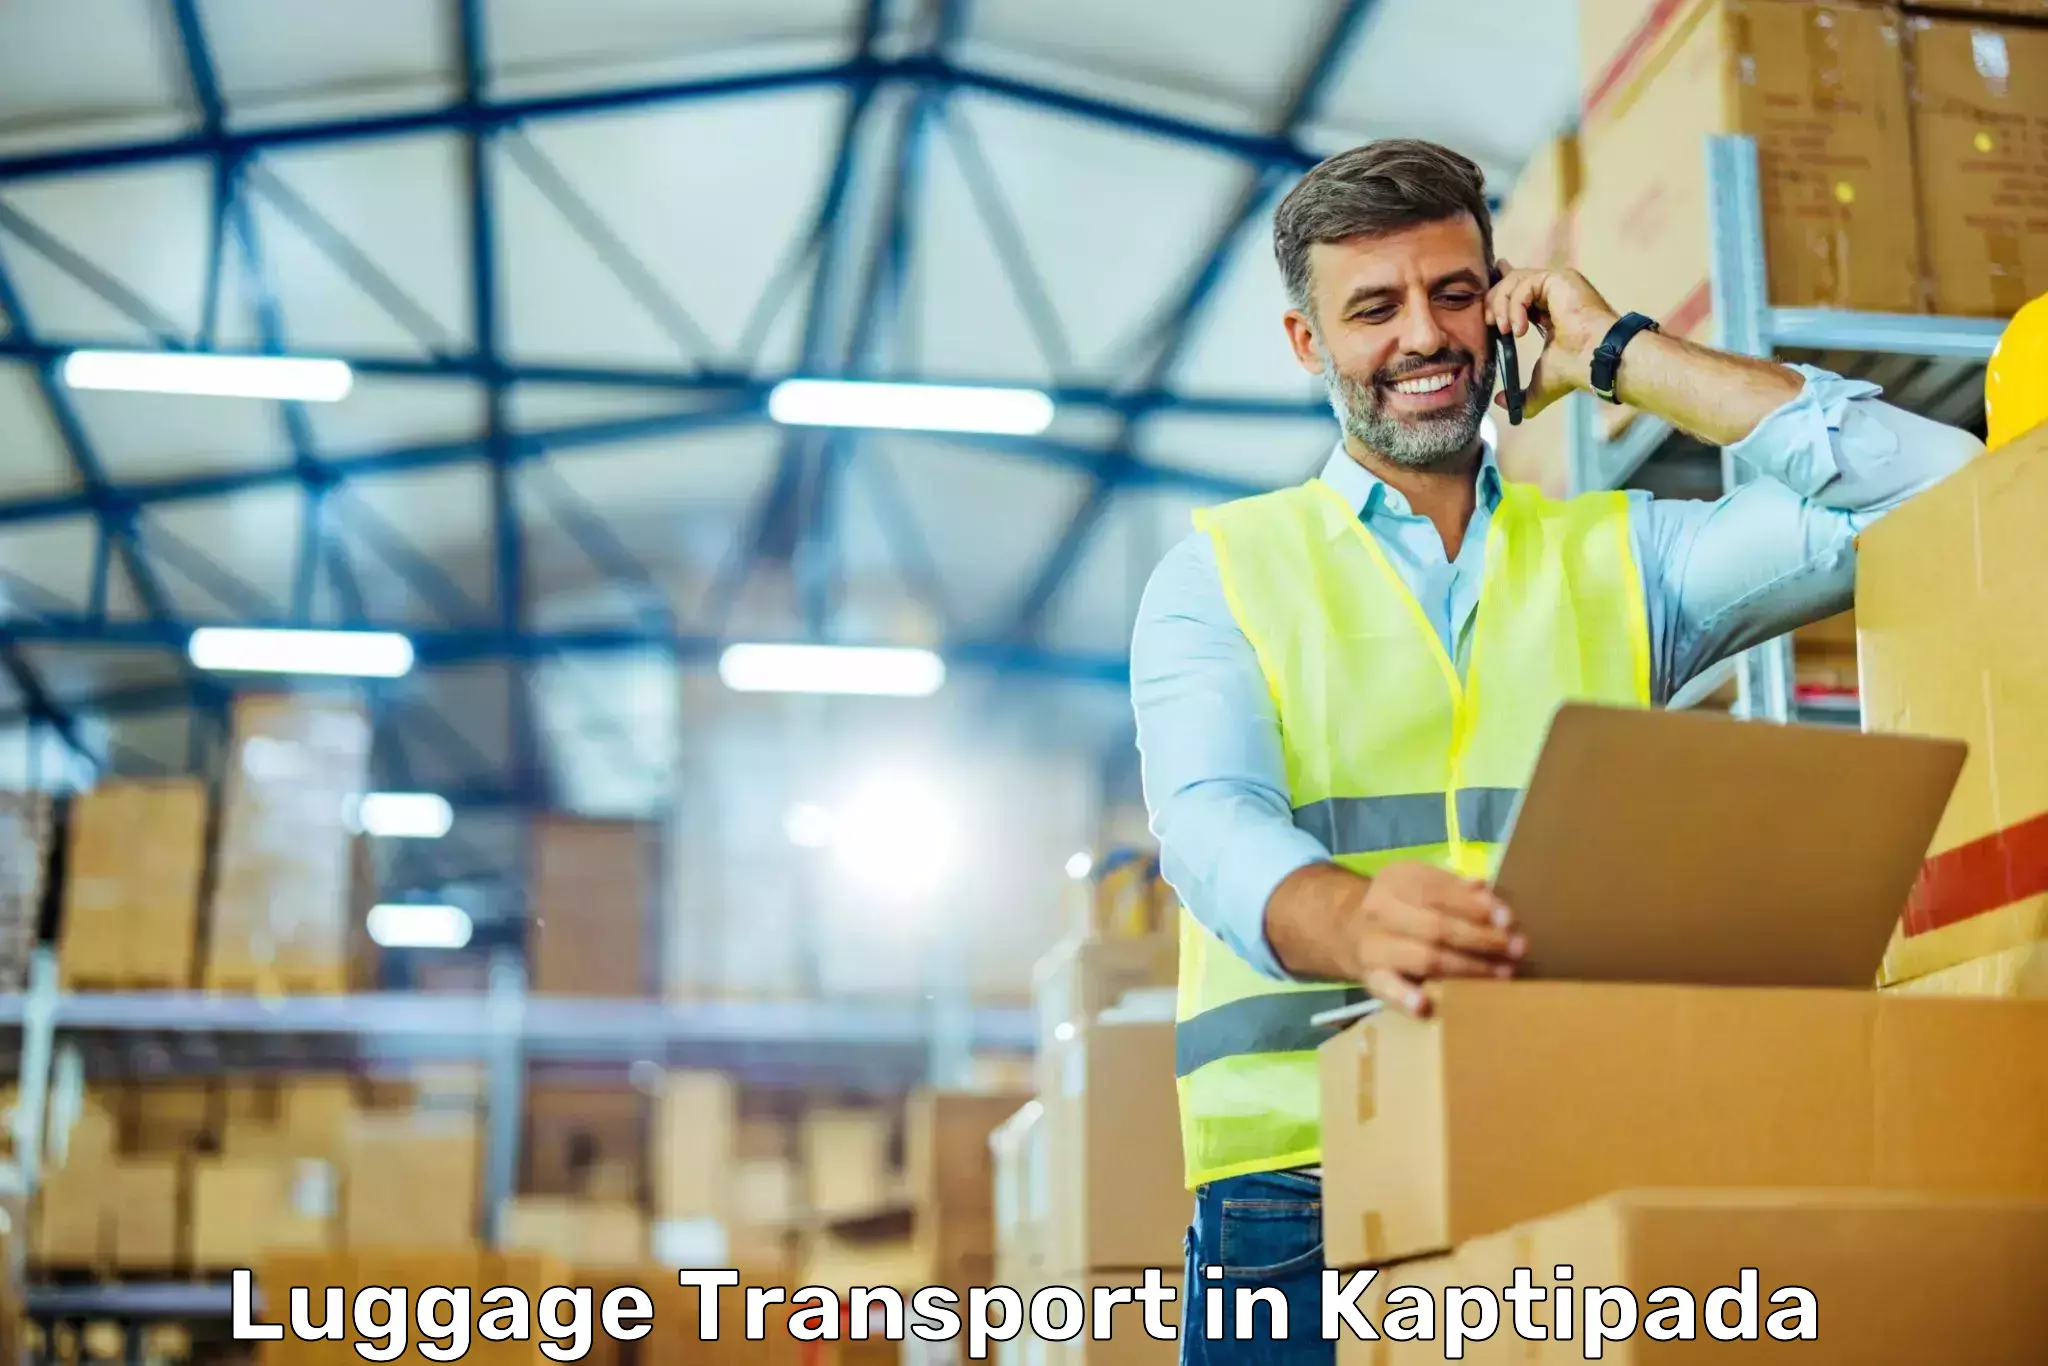 Professional baggage transport in Kaptipada